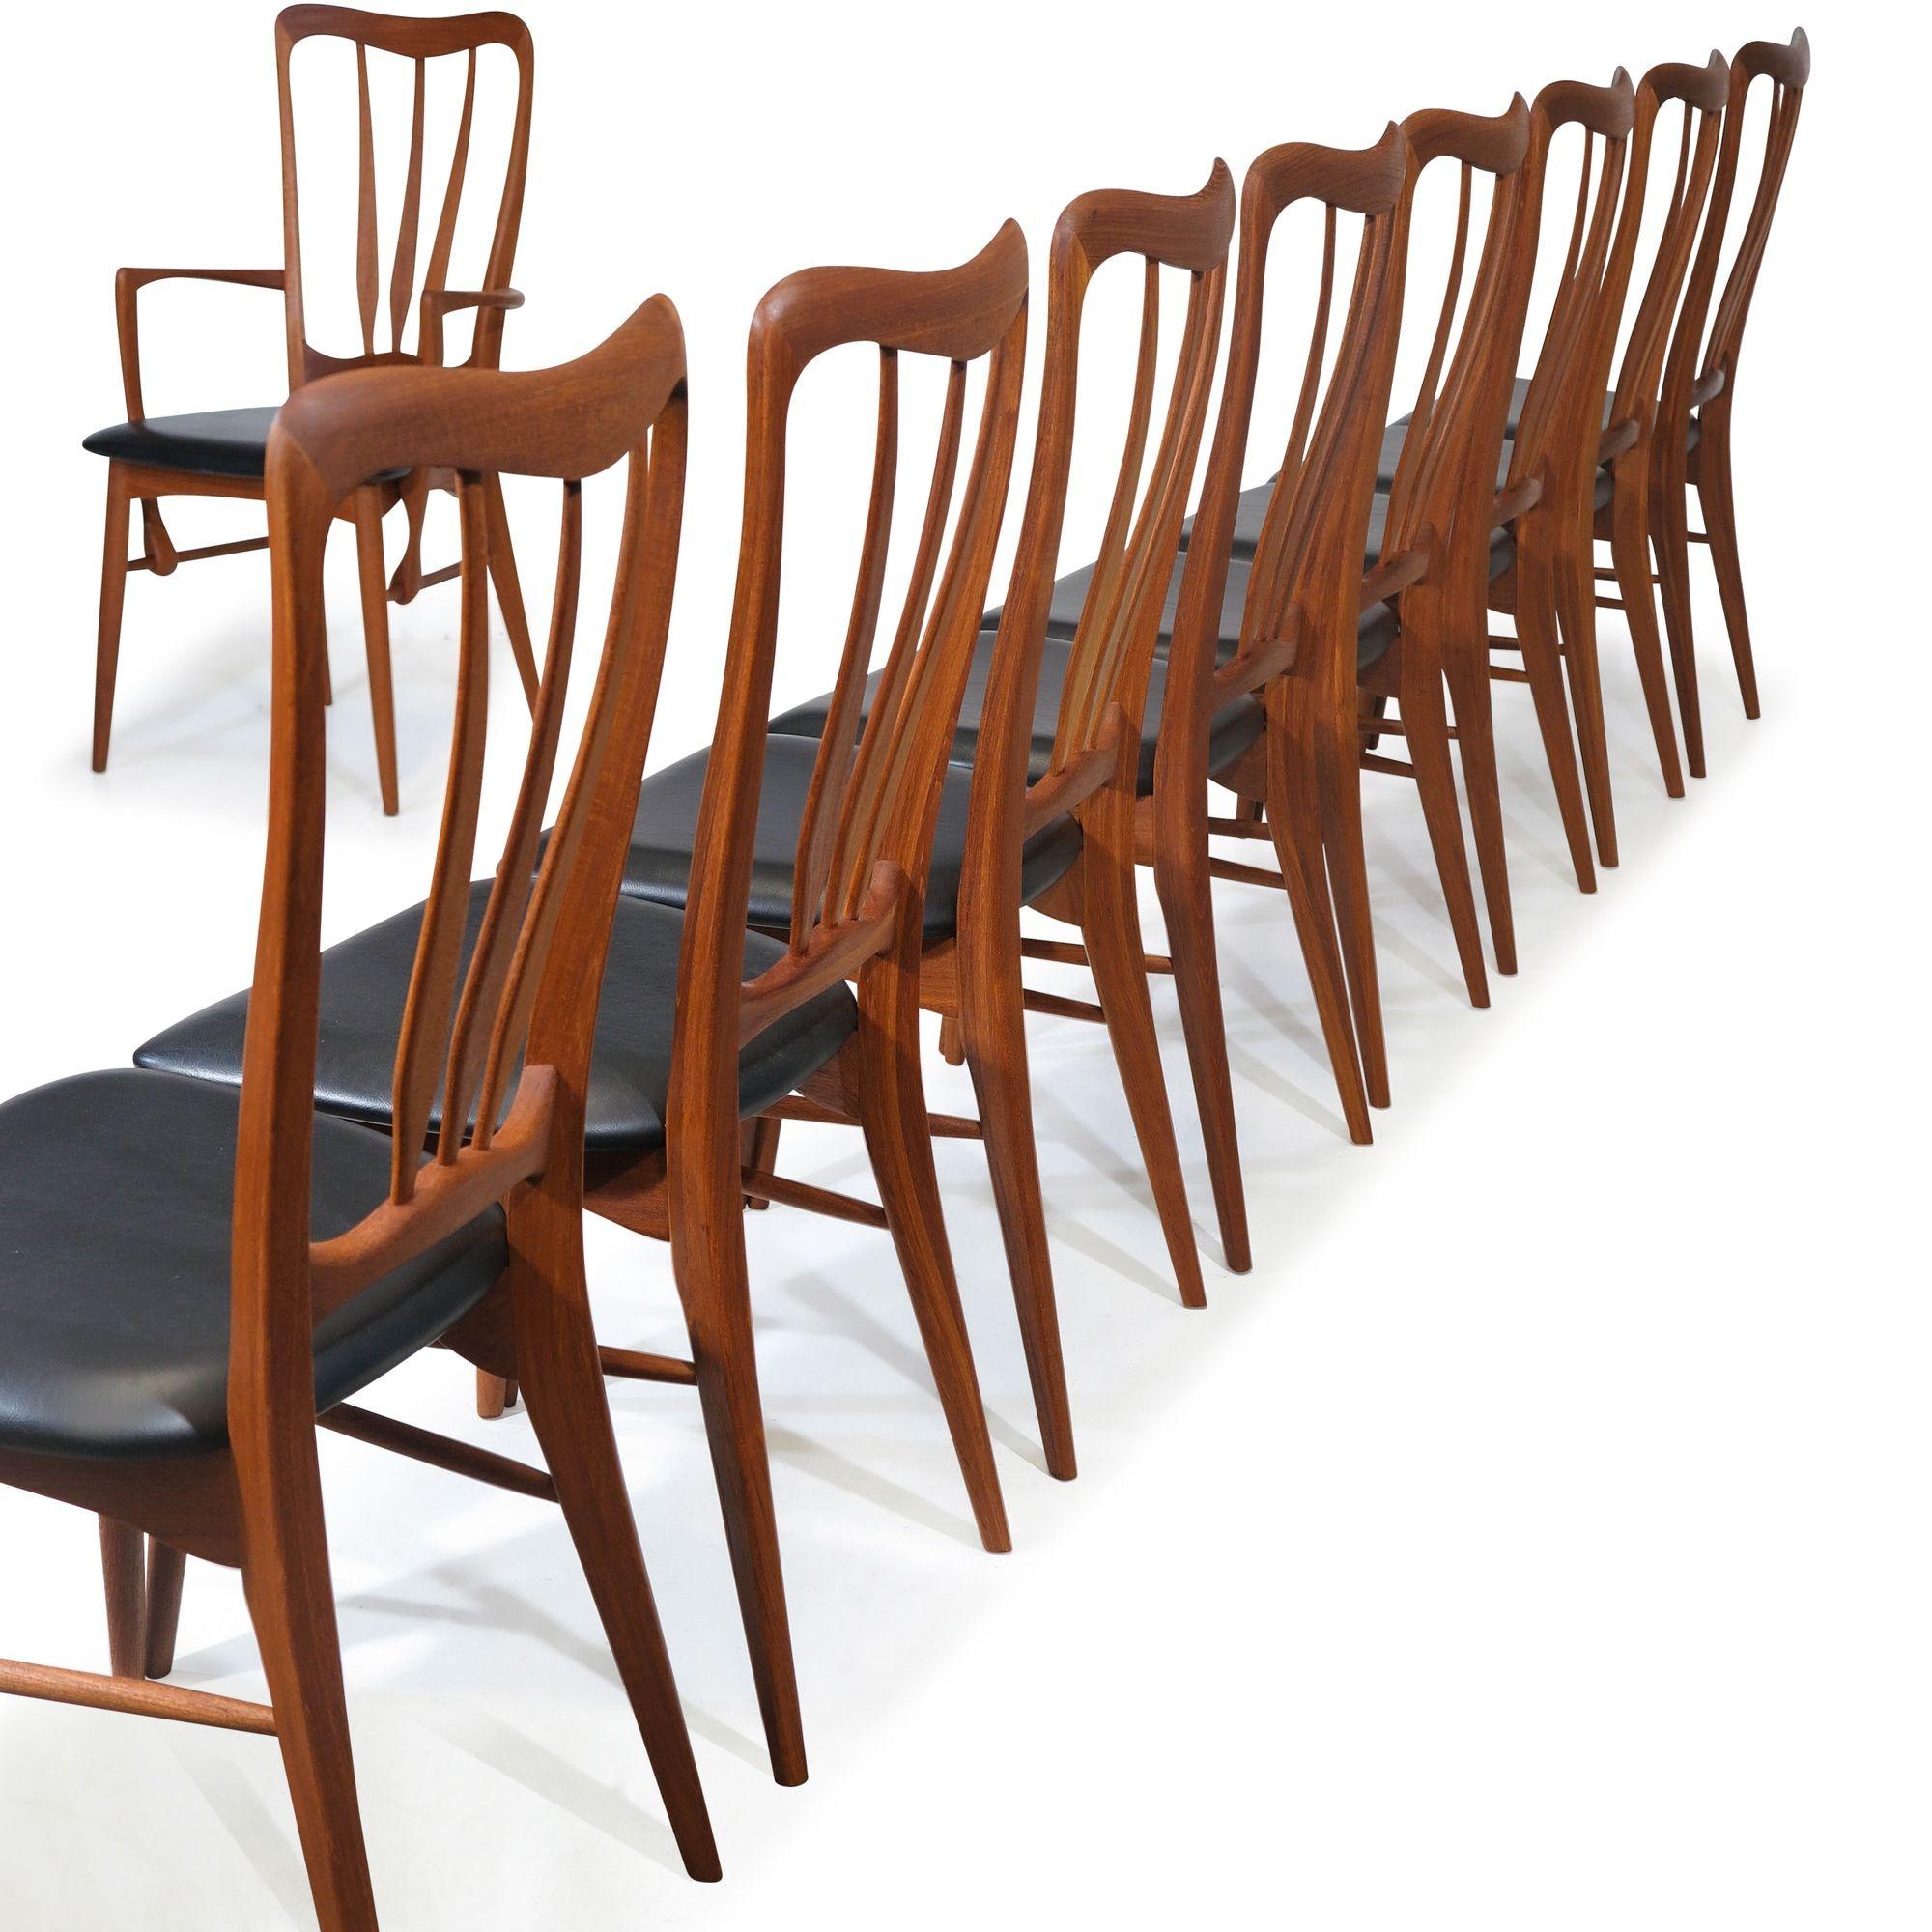 10 Esszimmerstühle 'Ingrid', entworfen von Niels Koefoed für Koefoeds Hornslet, hergestellt aus massivem Teakholz mit einer dramatischen, skulpturalen Form A. Das elegante skandinavische Set besteht aus acht Beistellstühlen und zwei Sesseln, alle